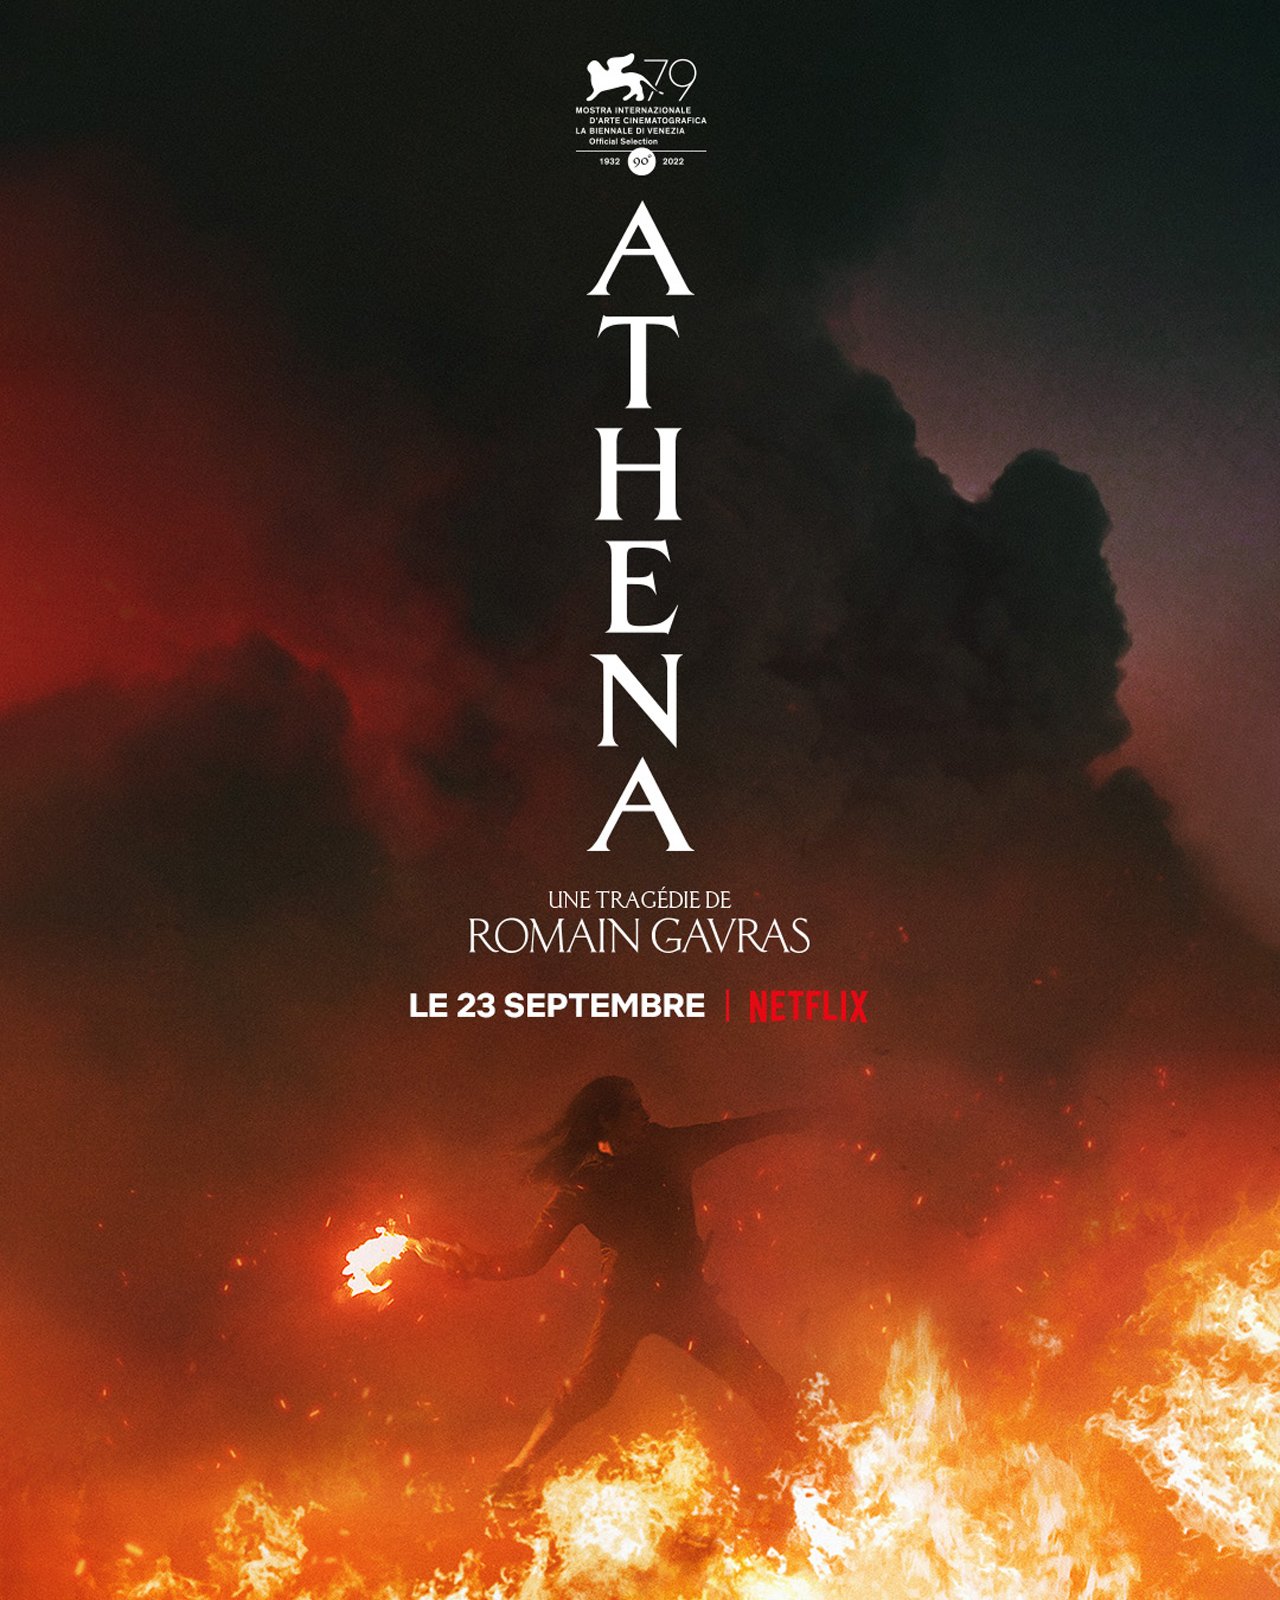 [好雷] 雅典娜 Athena (Netflix 法國片)